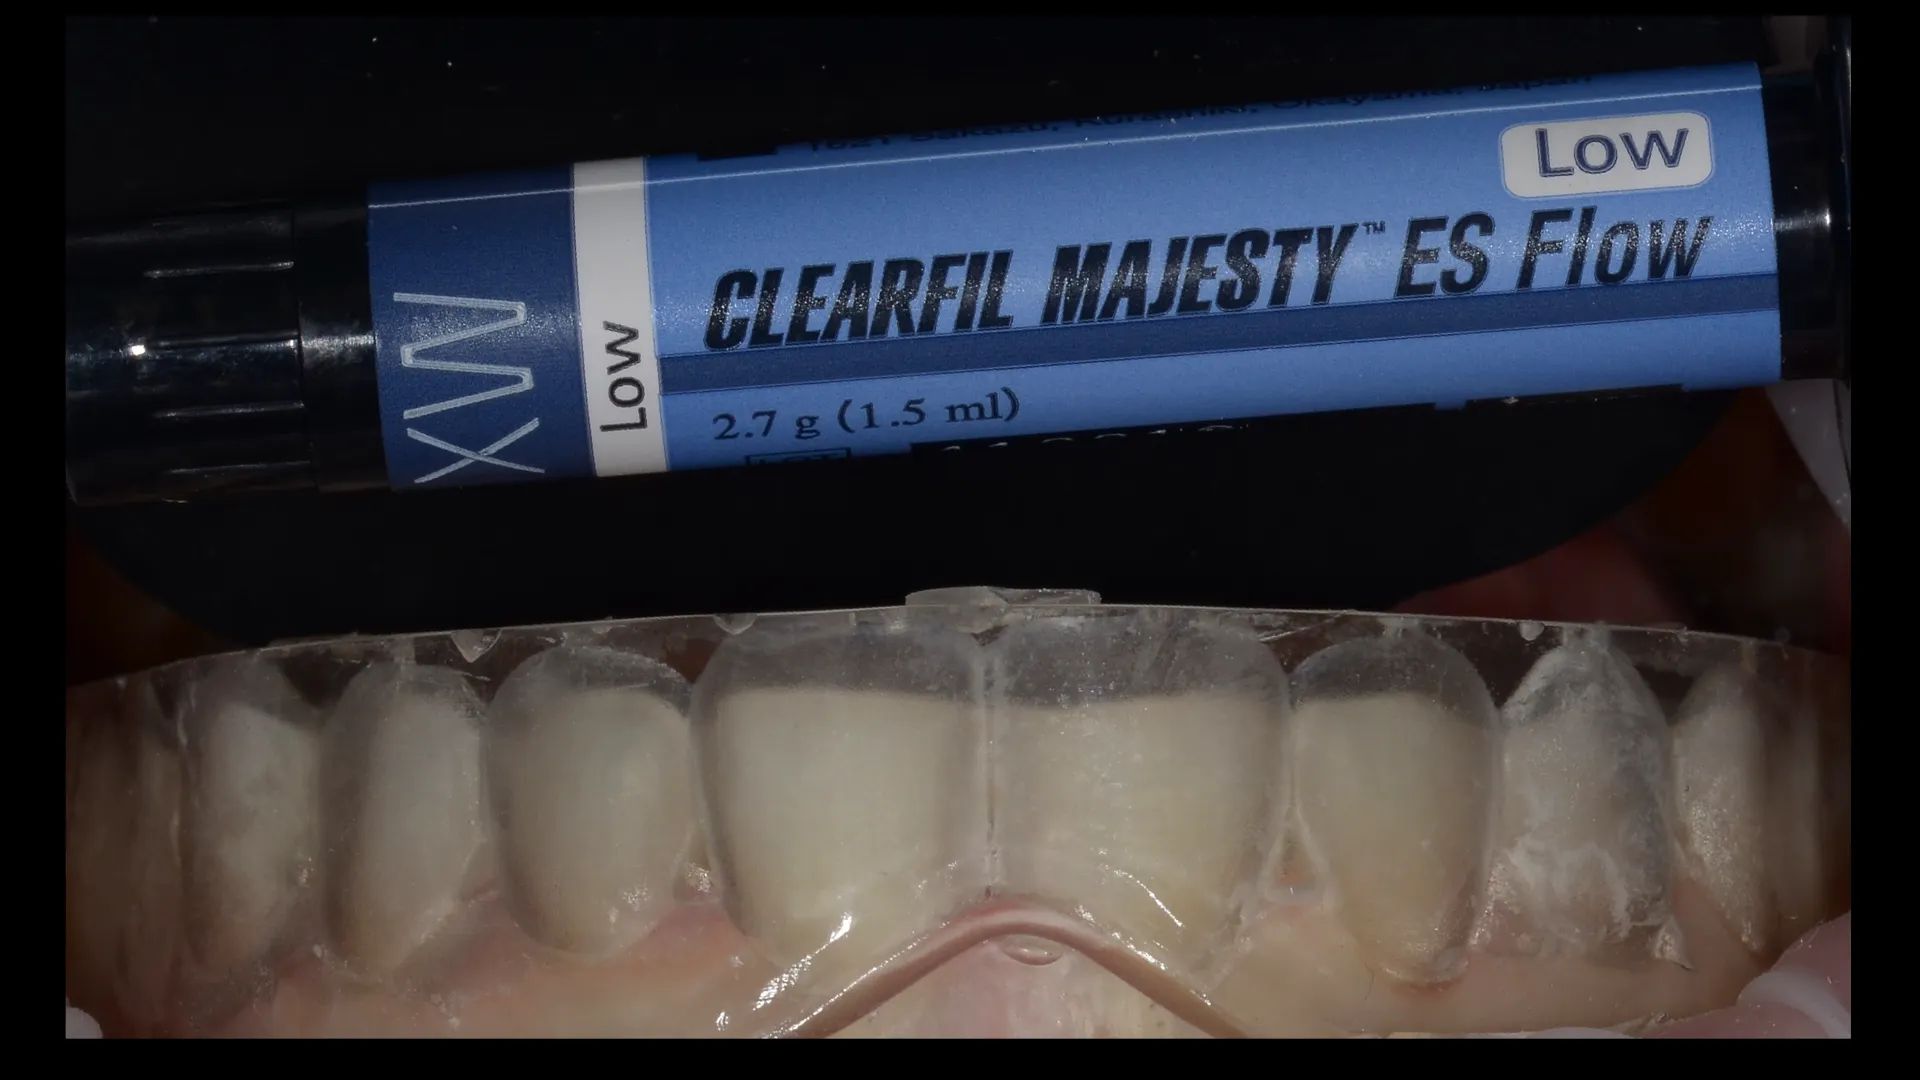 Clearfil Majesty ES Flow XW 1,5ml Spritze